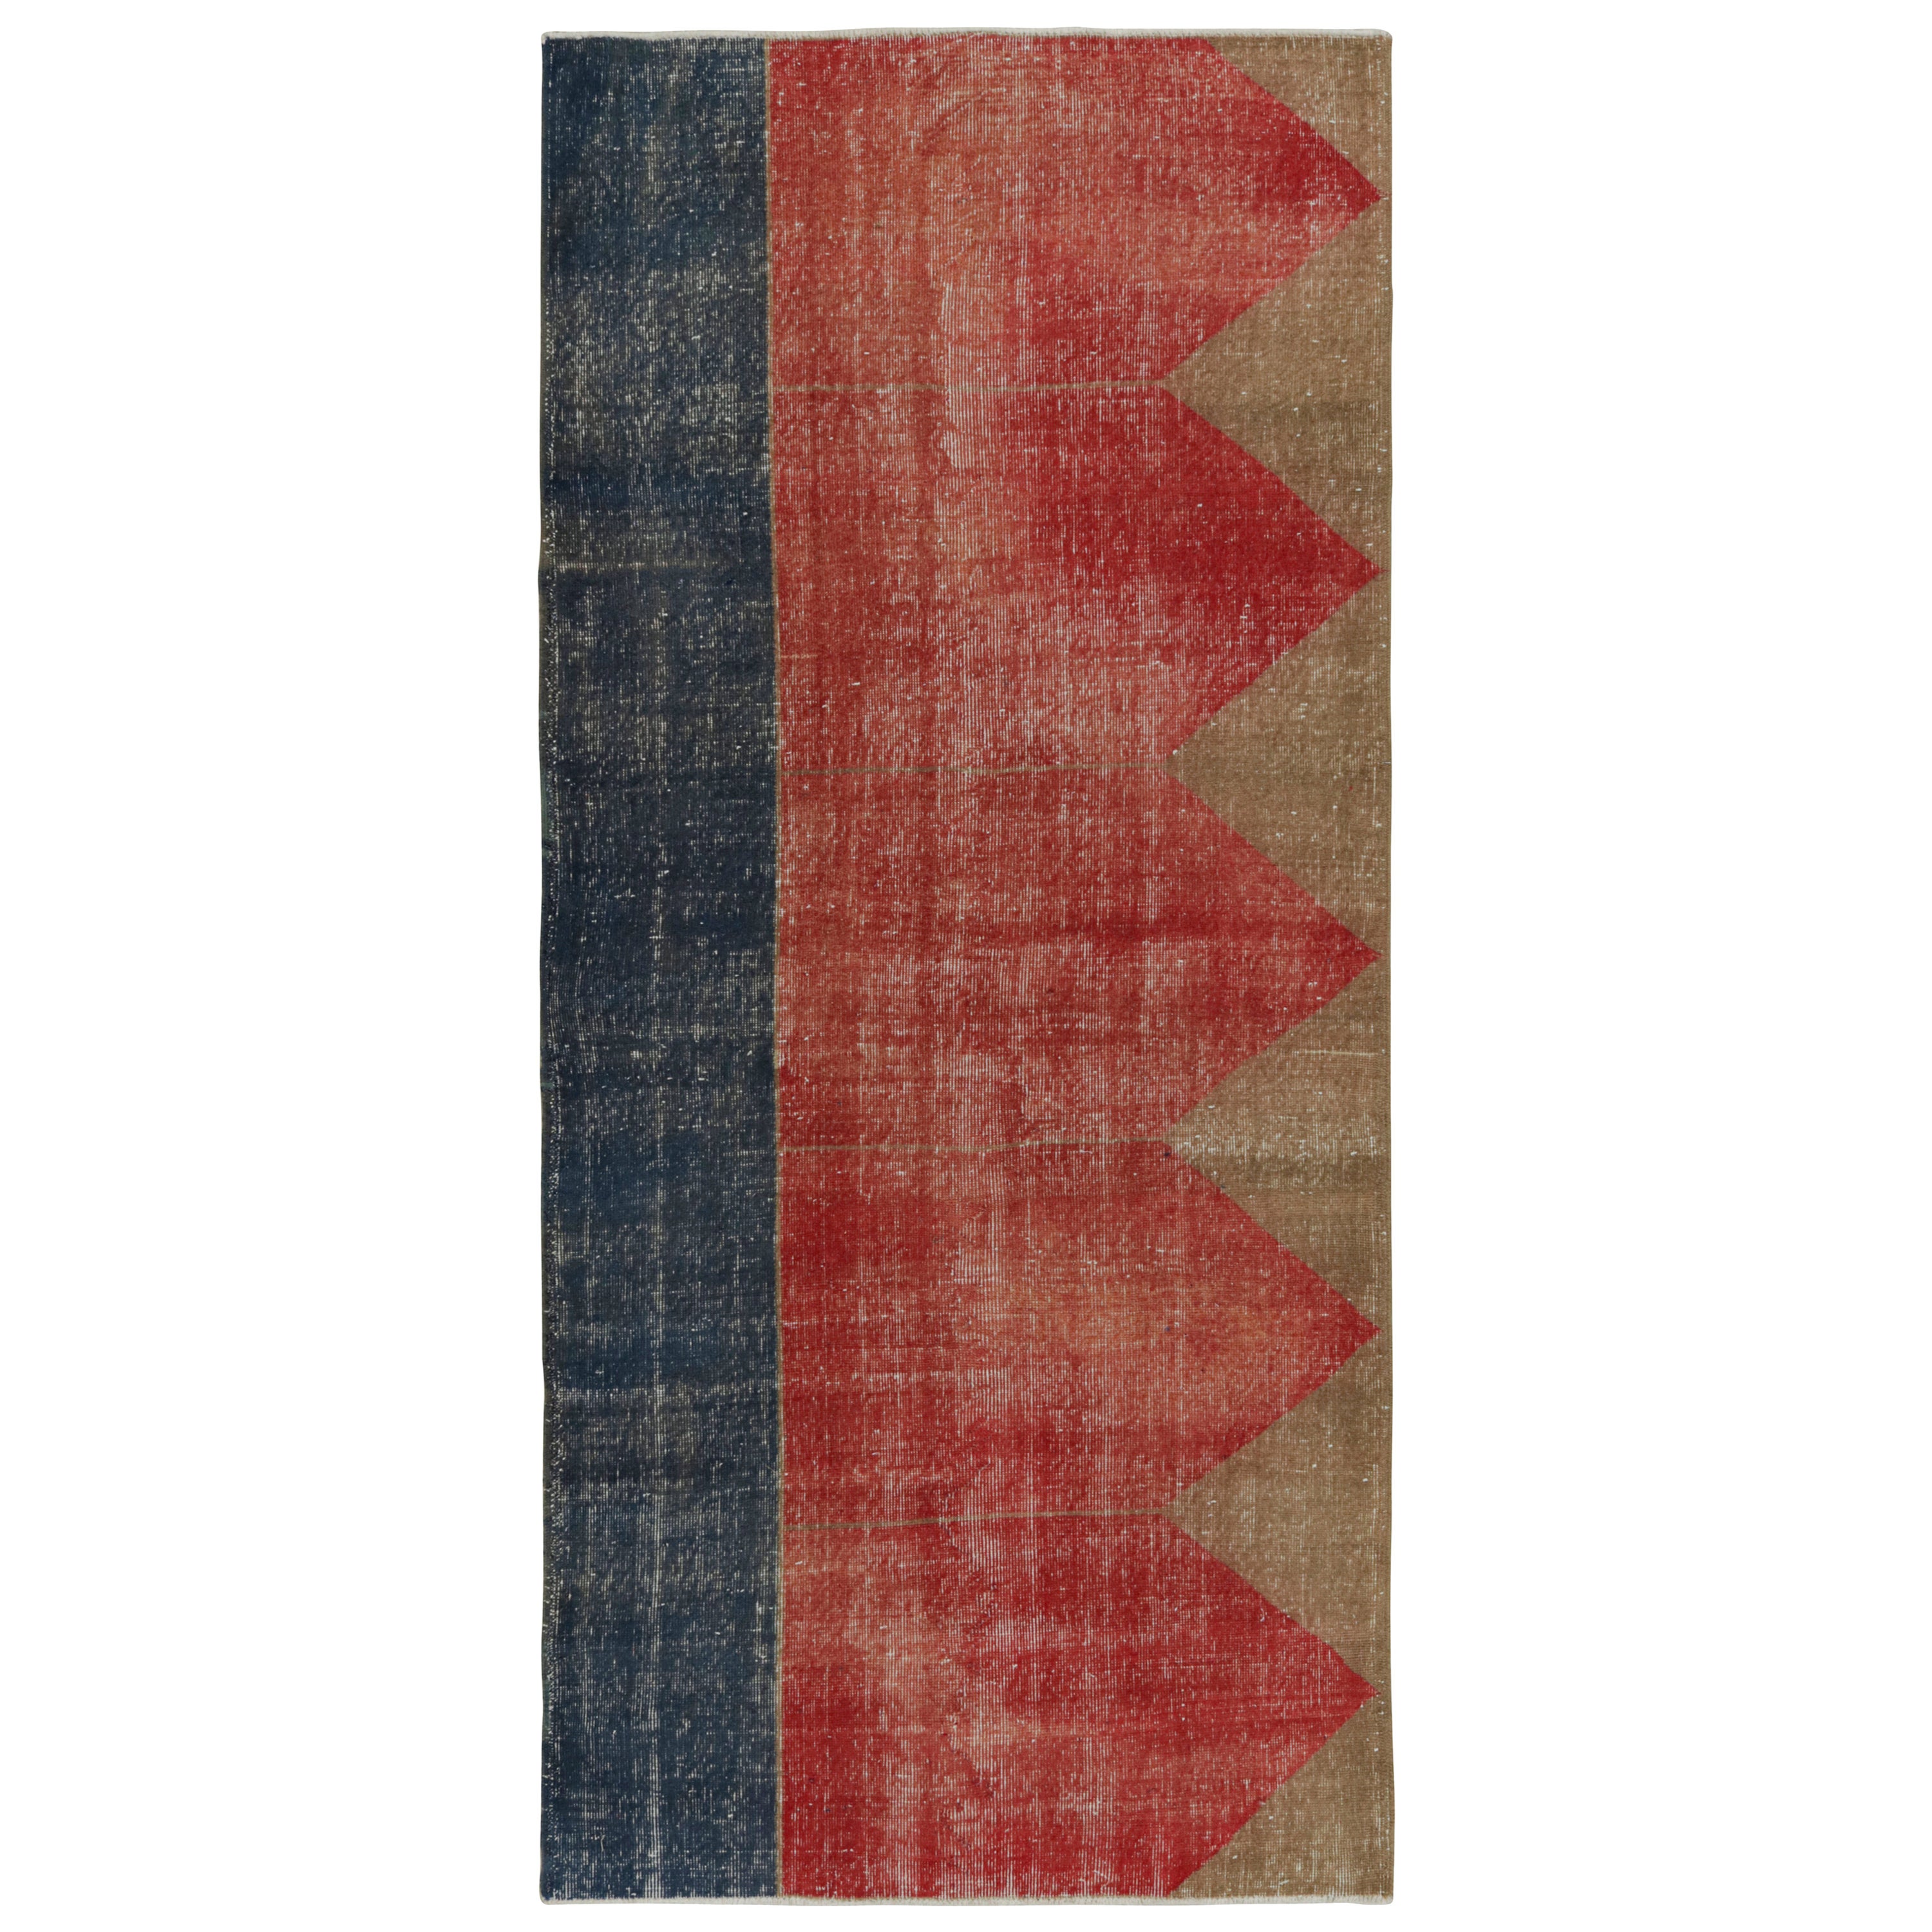 Türkischer Vintage-Teppich in Rot, mit geometrischen Mustern, von Rug & Kilim